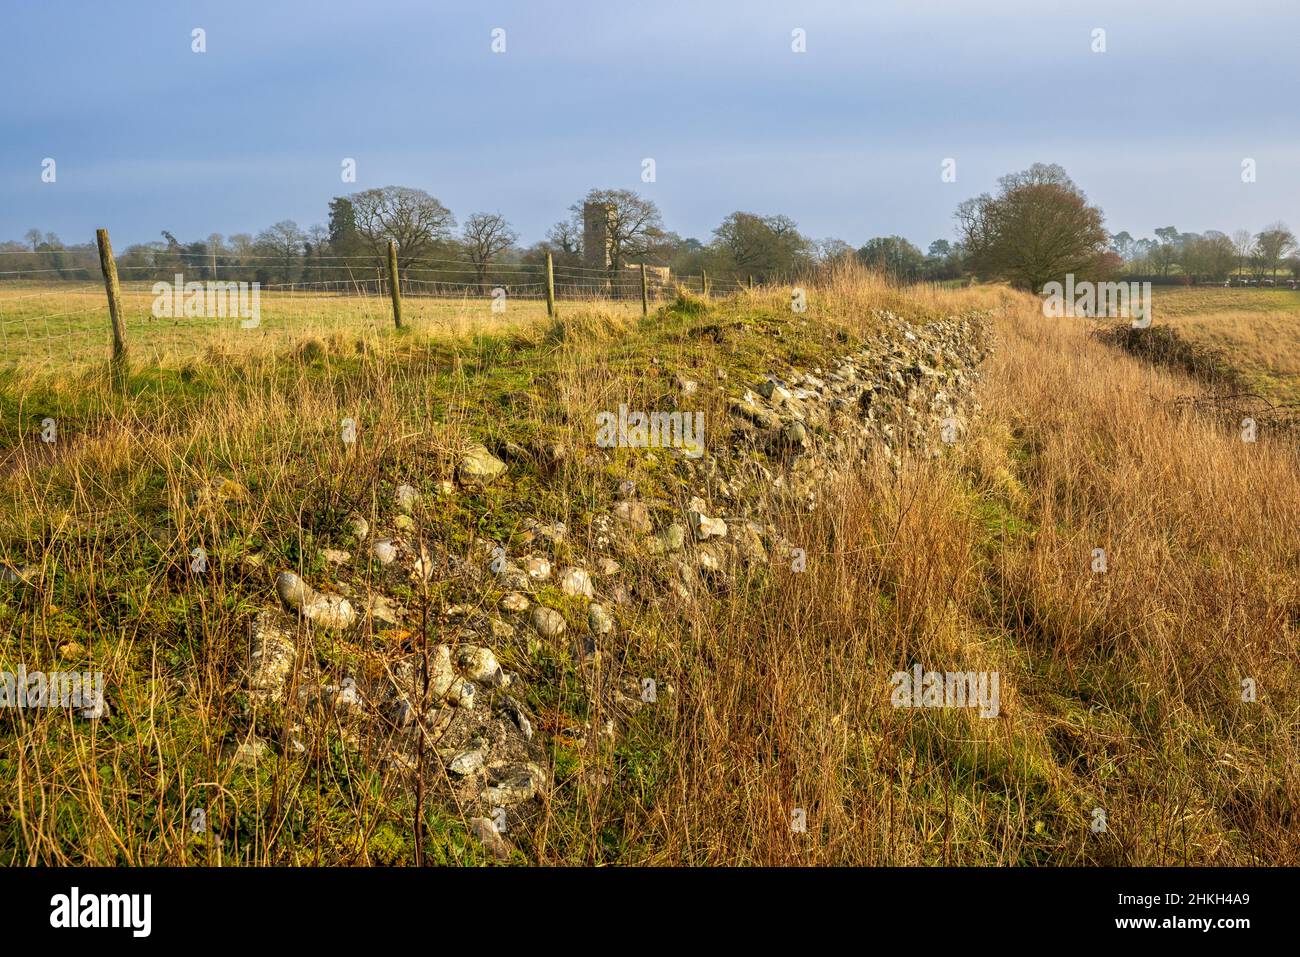 Entlang der zerstörten Verteidigungsmauer von Venta Icenorum die Stelle der römischen Hauptstadt Norfolk, England Stockfoto